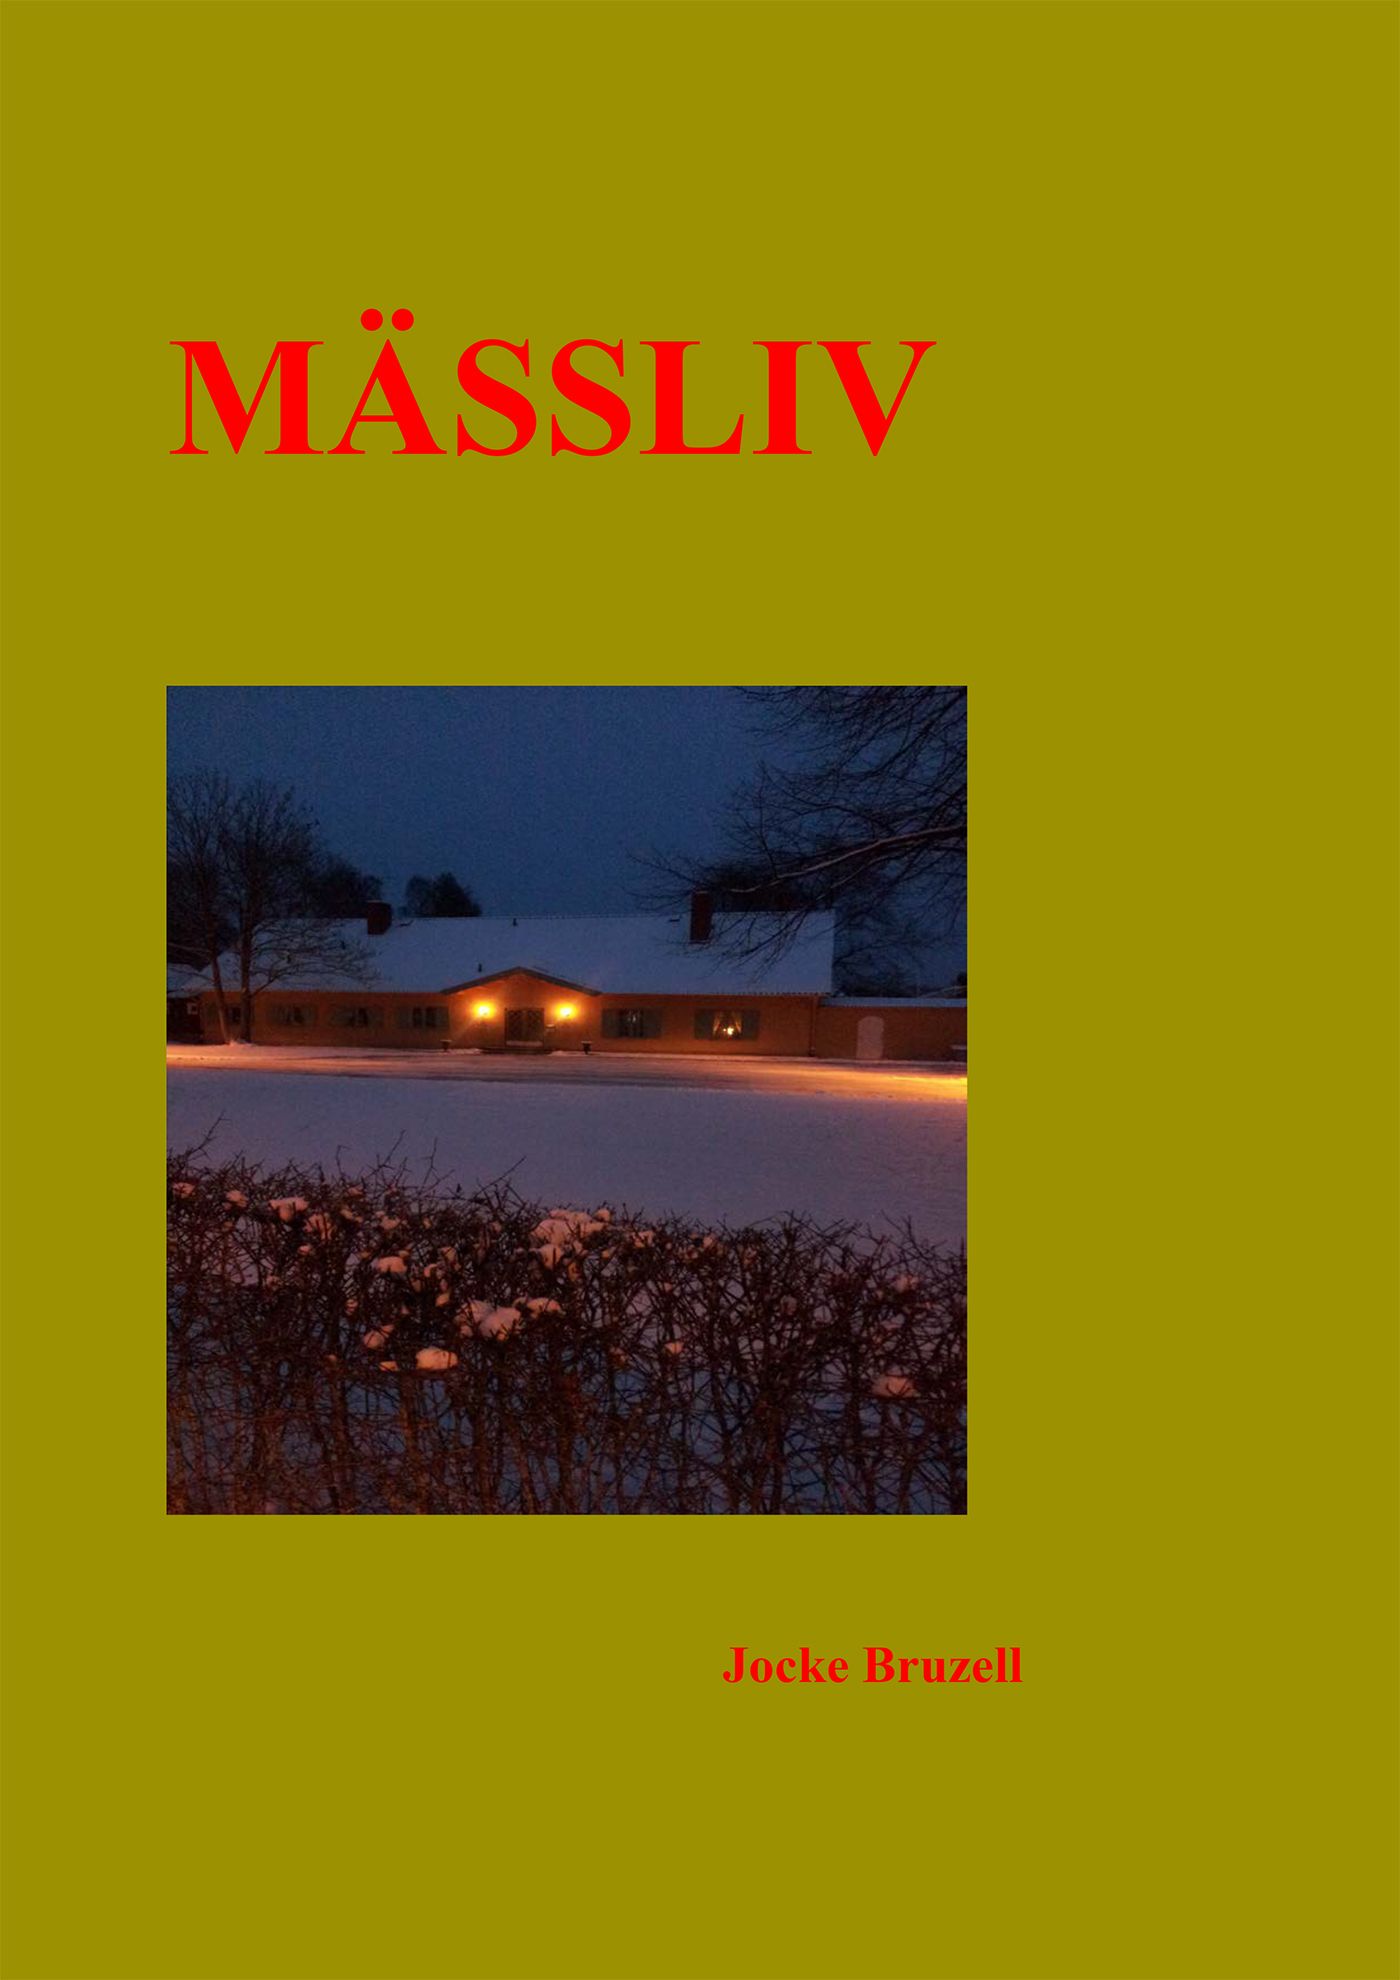 Mässliv, eBook by Bror Bruzell